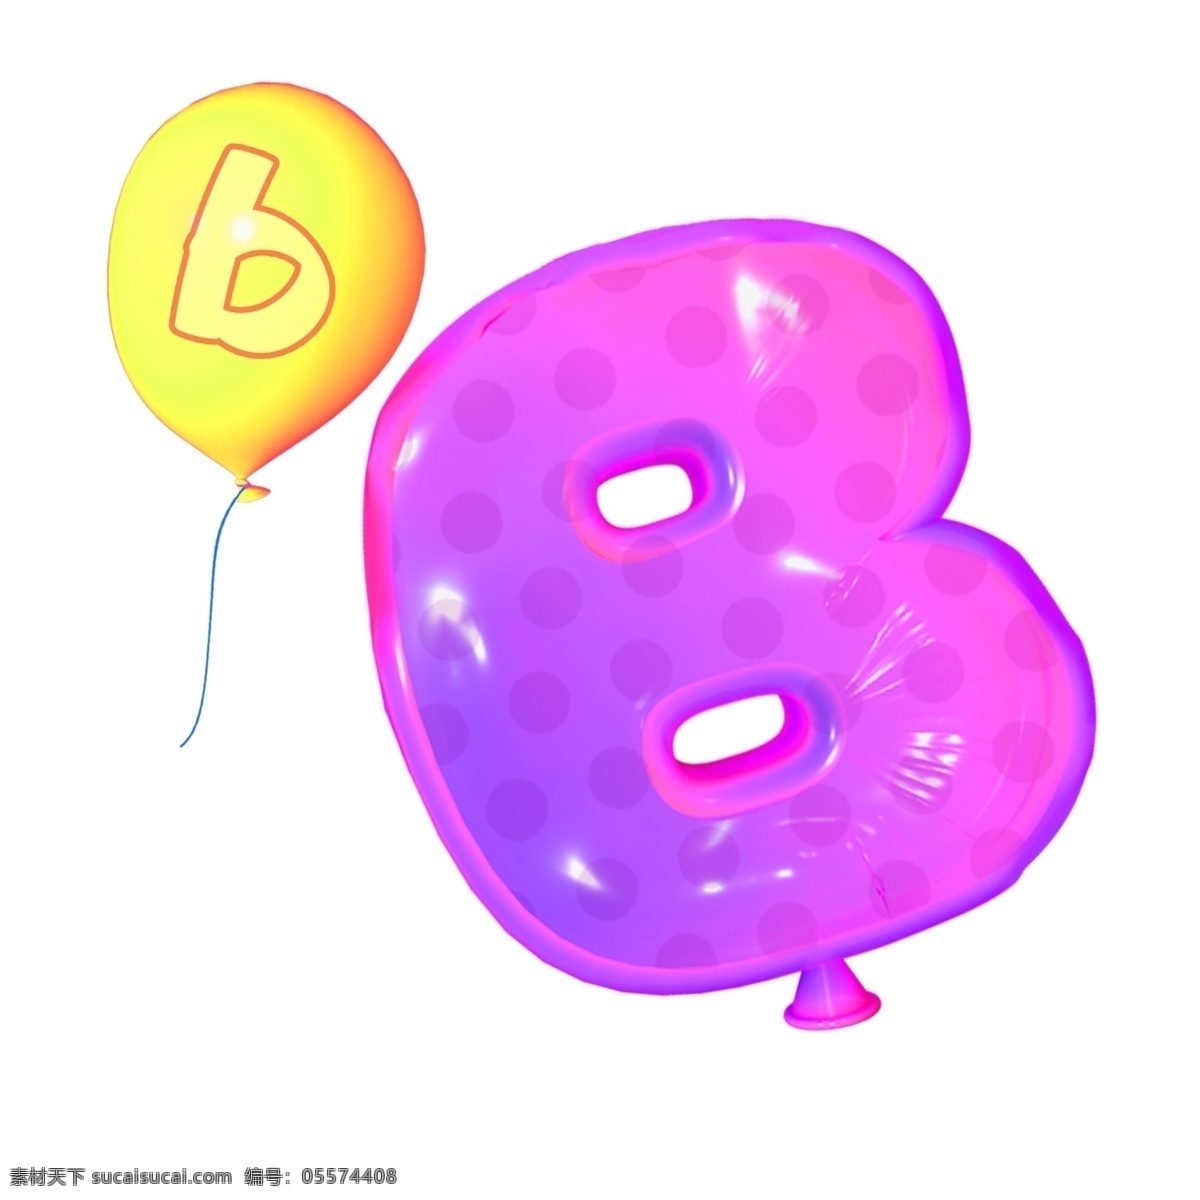 三维 立体 电商 海报 气球 字母 合集 炫酷 时尚 元素 可爱 卡通 3d 色彩 免抠图 平面 真实 视觉 英文